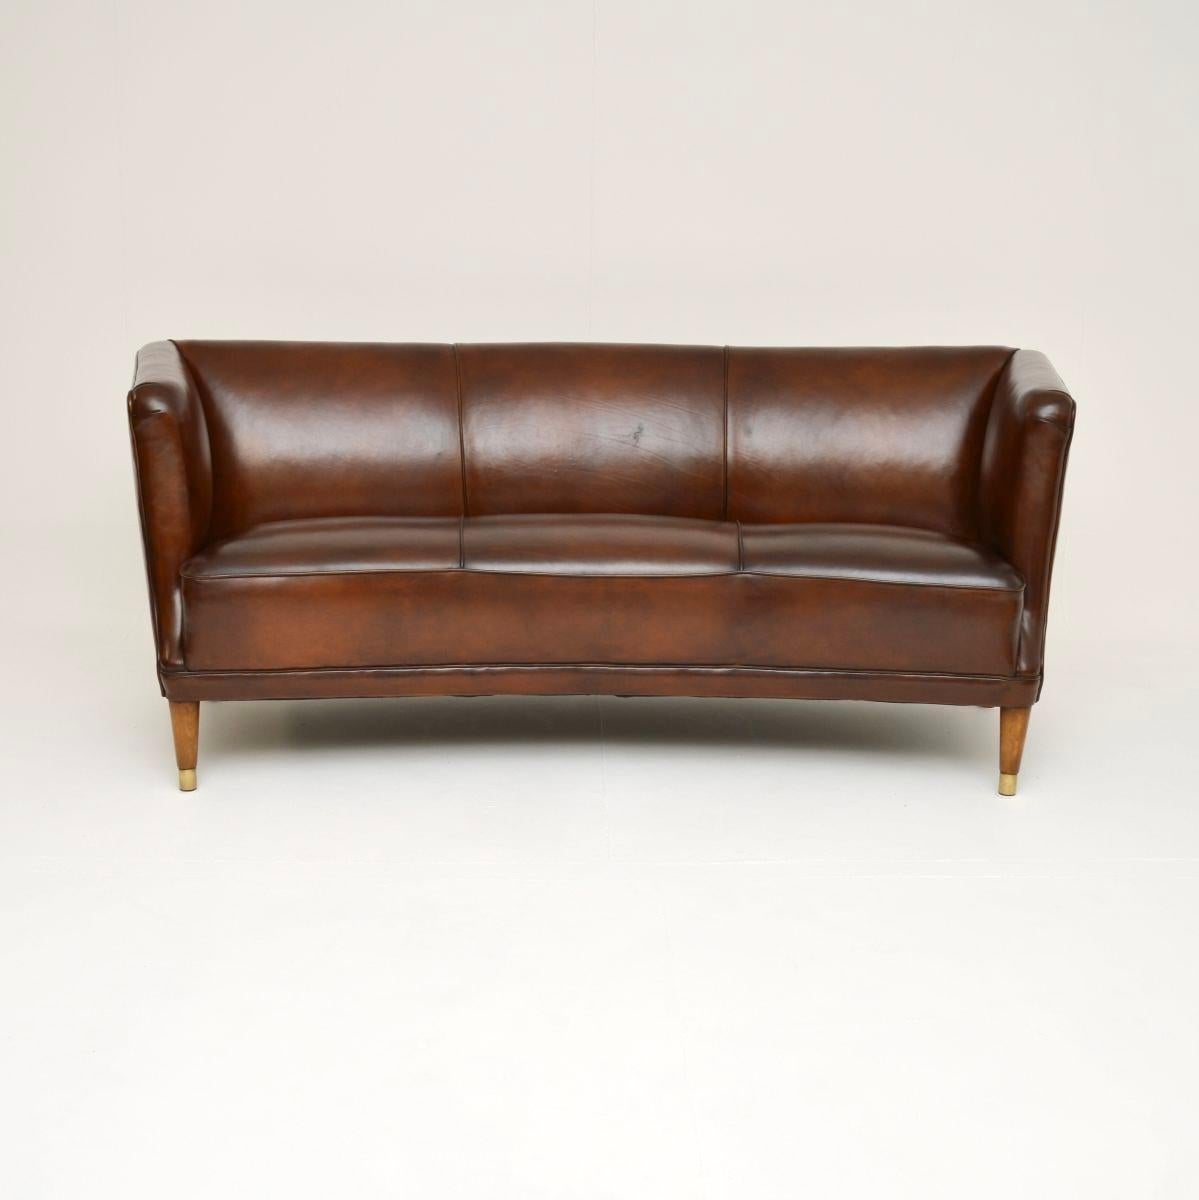 Un canapé en cuir d'ébéniste danois vintage absolument magnifique et extrêmement bien fait. Récemment importé du Danemark, il date des années 1950.

La qualité est exceptionnelle, la taille est très utile et très confortable. Le cadre est bien